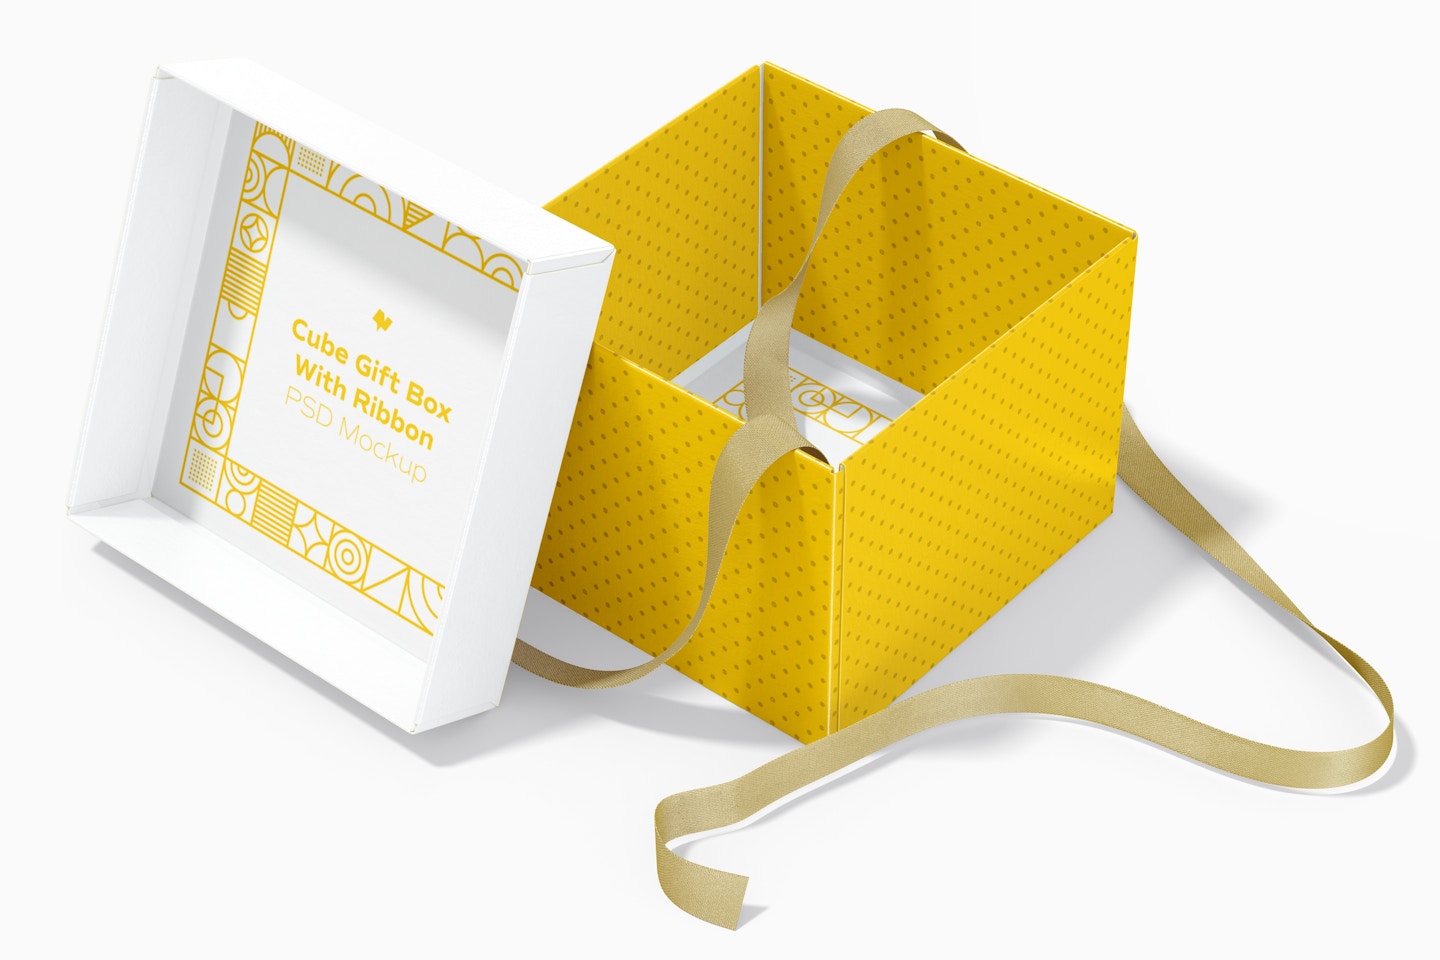 Cube Gift Box With Ribbon Mockup, Interior View